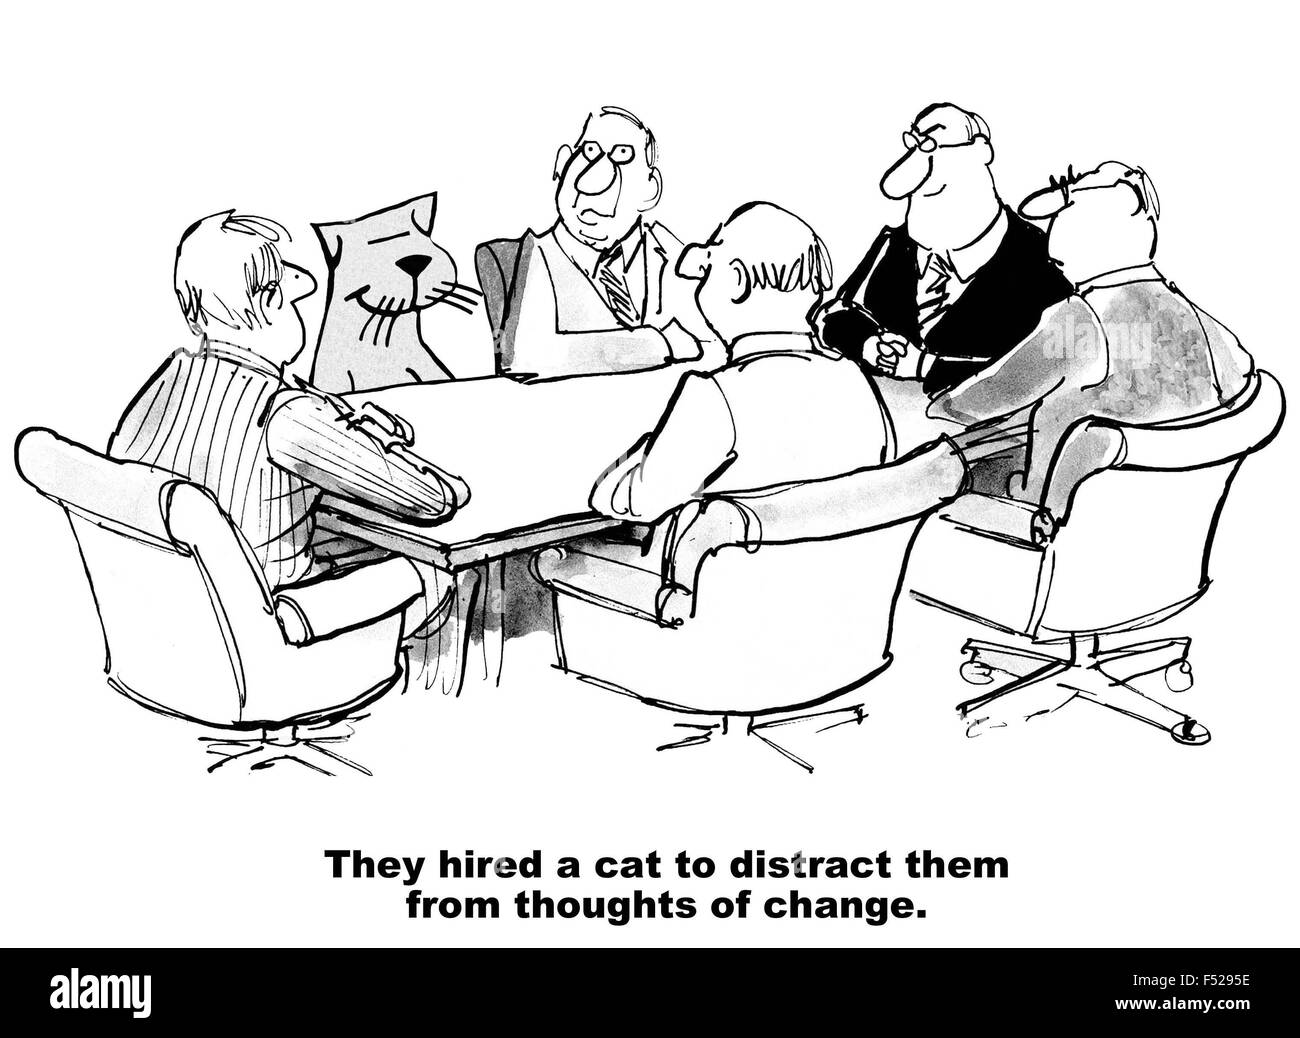 Business-Karikatur eines Meetings, einschließlich einer Katze "sie stellten eine Katze um sie abzulenken von den Gedanken des Wandels". Stockfoto